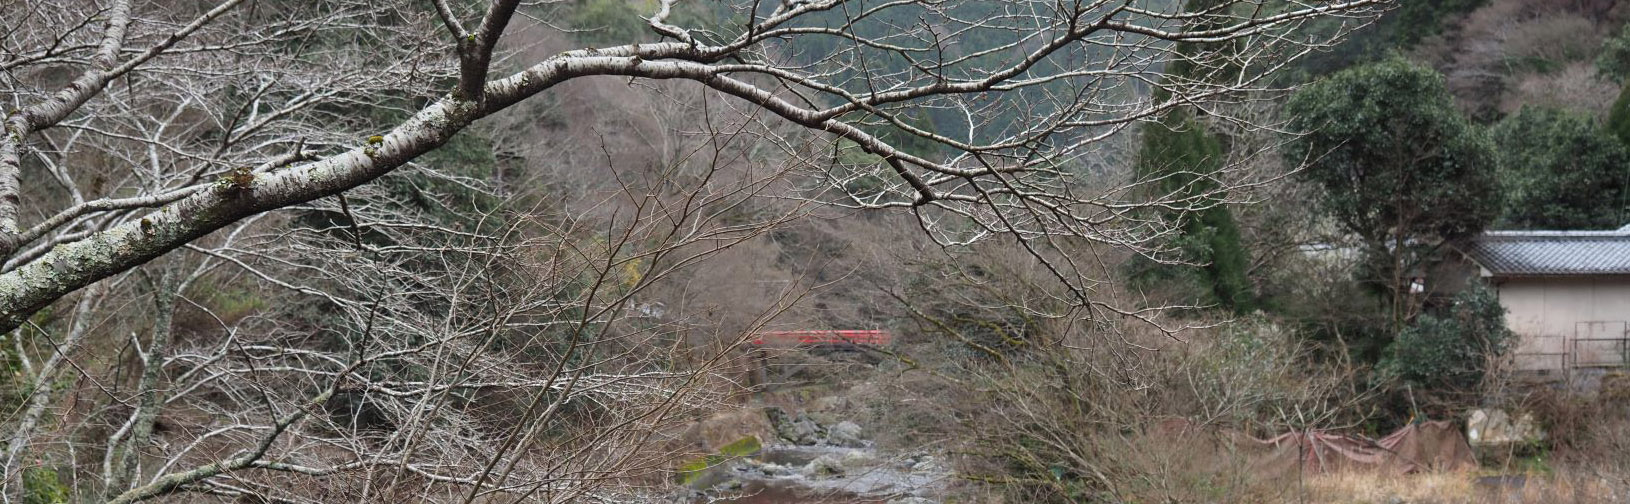 1月例会「琵琶湖疎水と三井寺展望台からの三井寺と大津市内